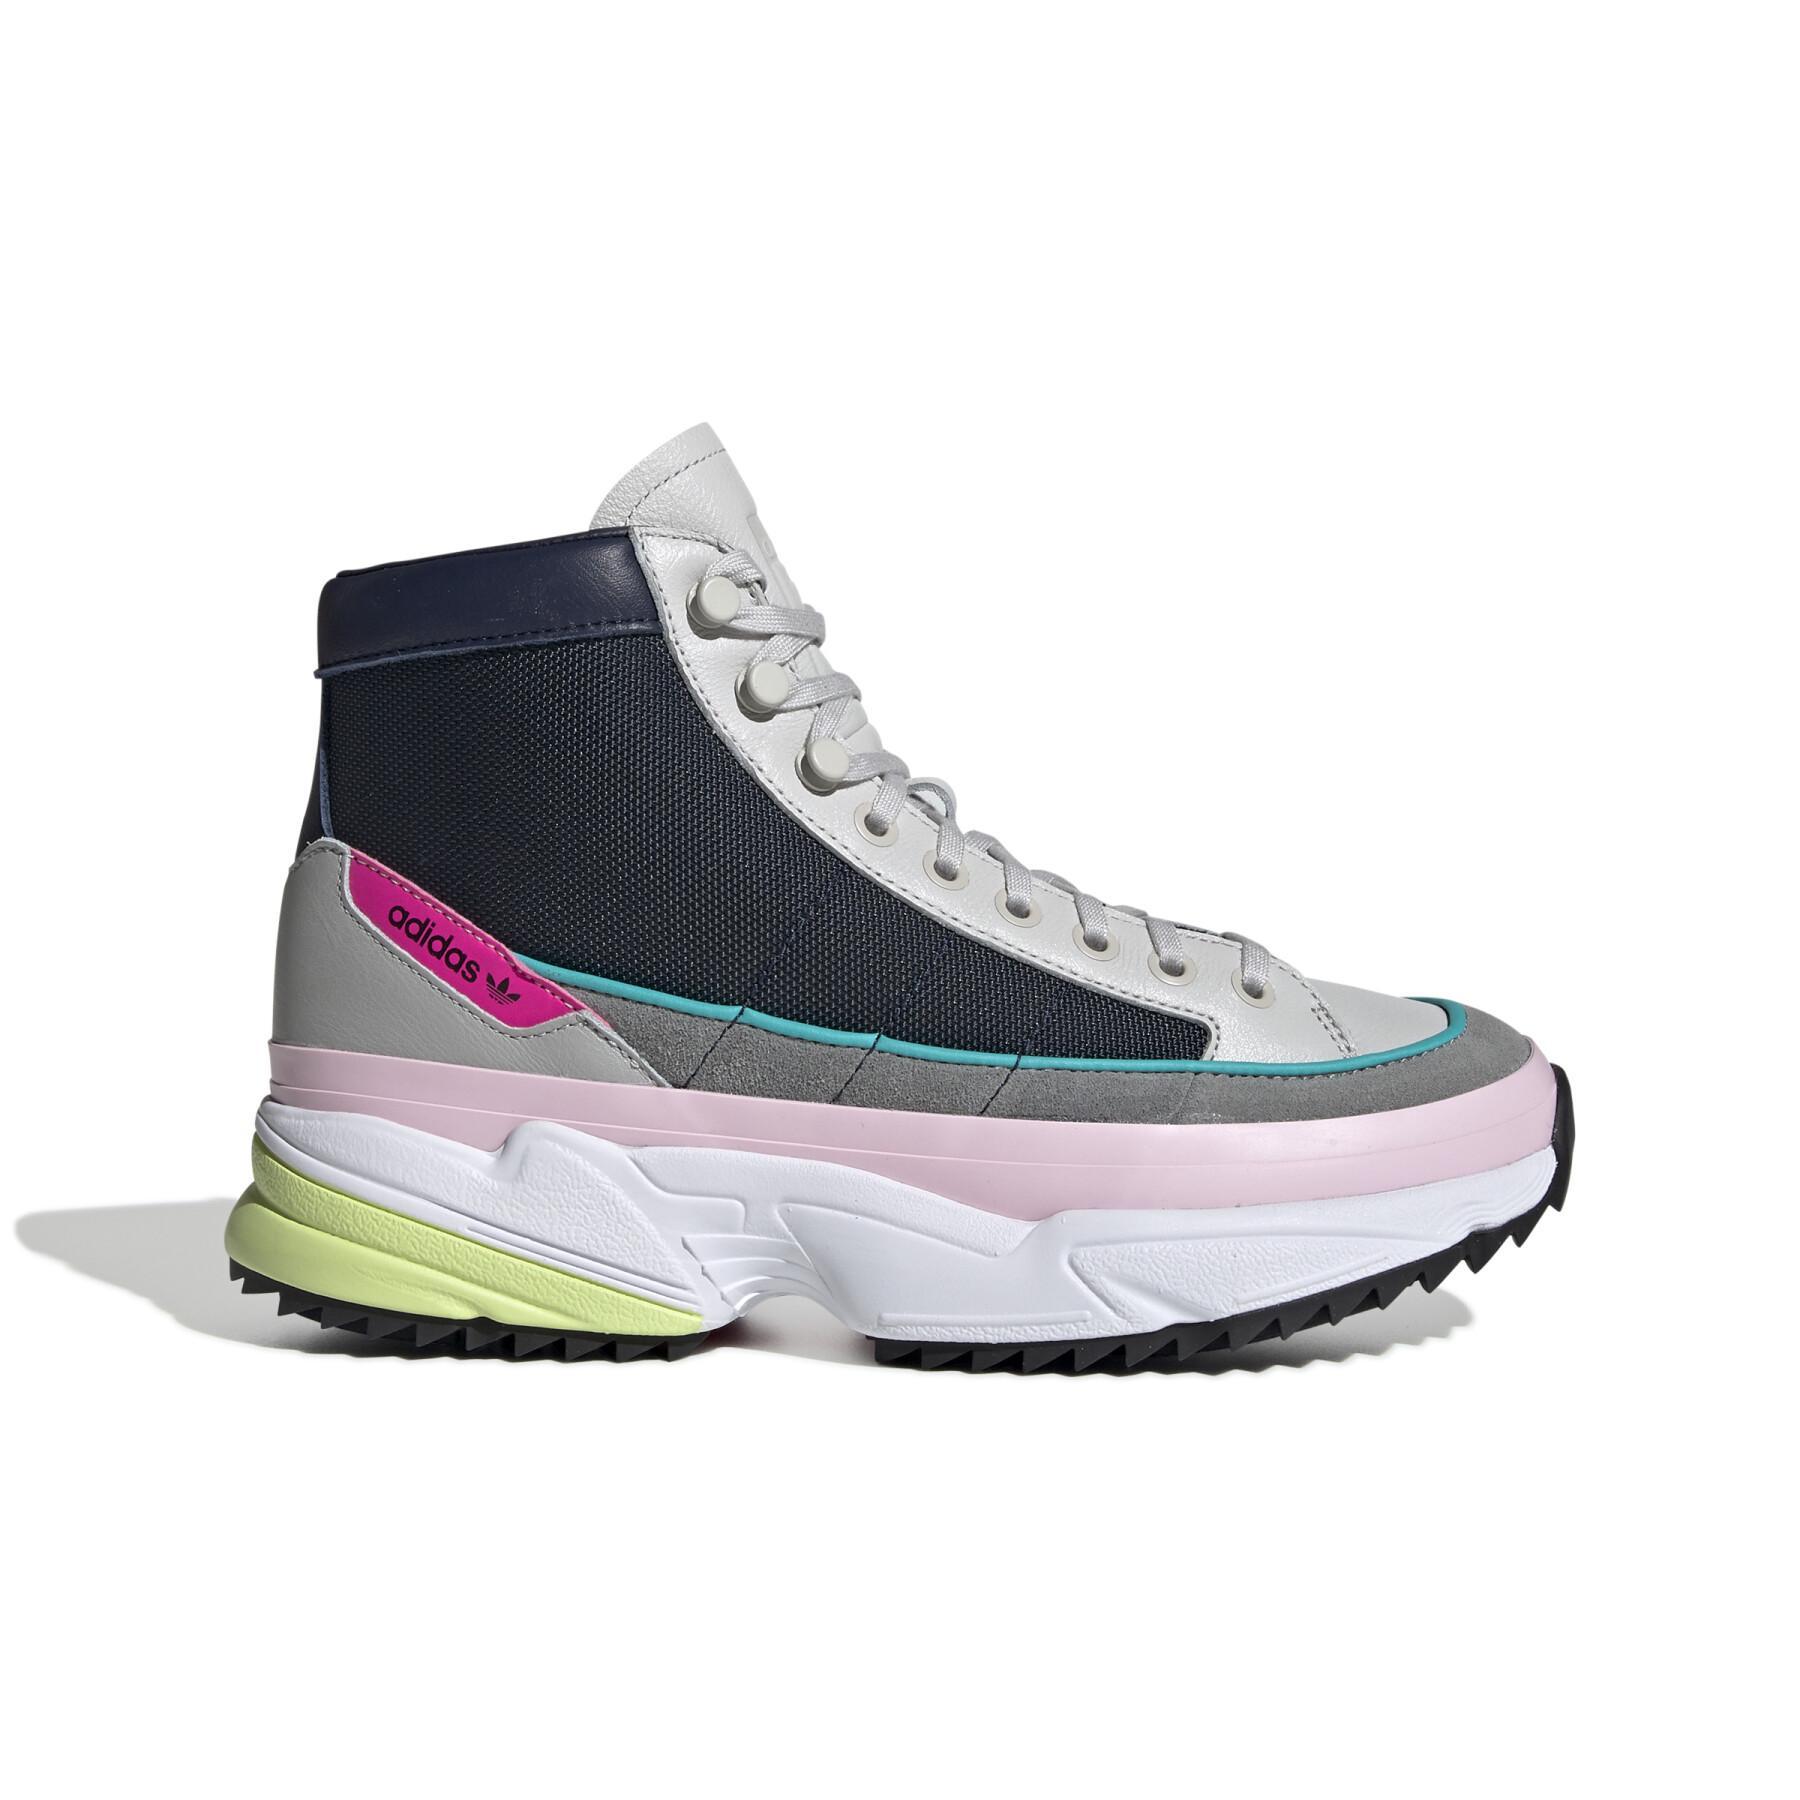 terugtrekken Op tijd rust adidas Kiellor Xtra Women's Sneakers - adidas Originals - Sneakers - Shoes